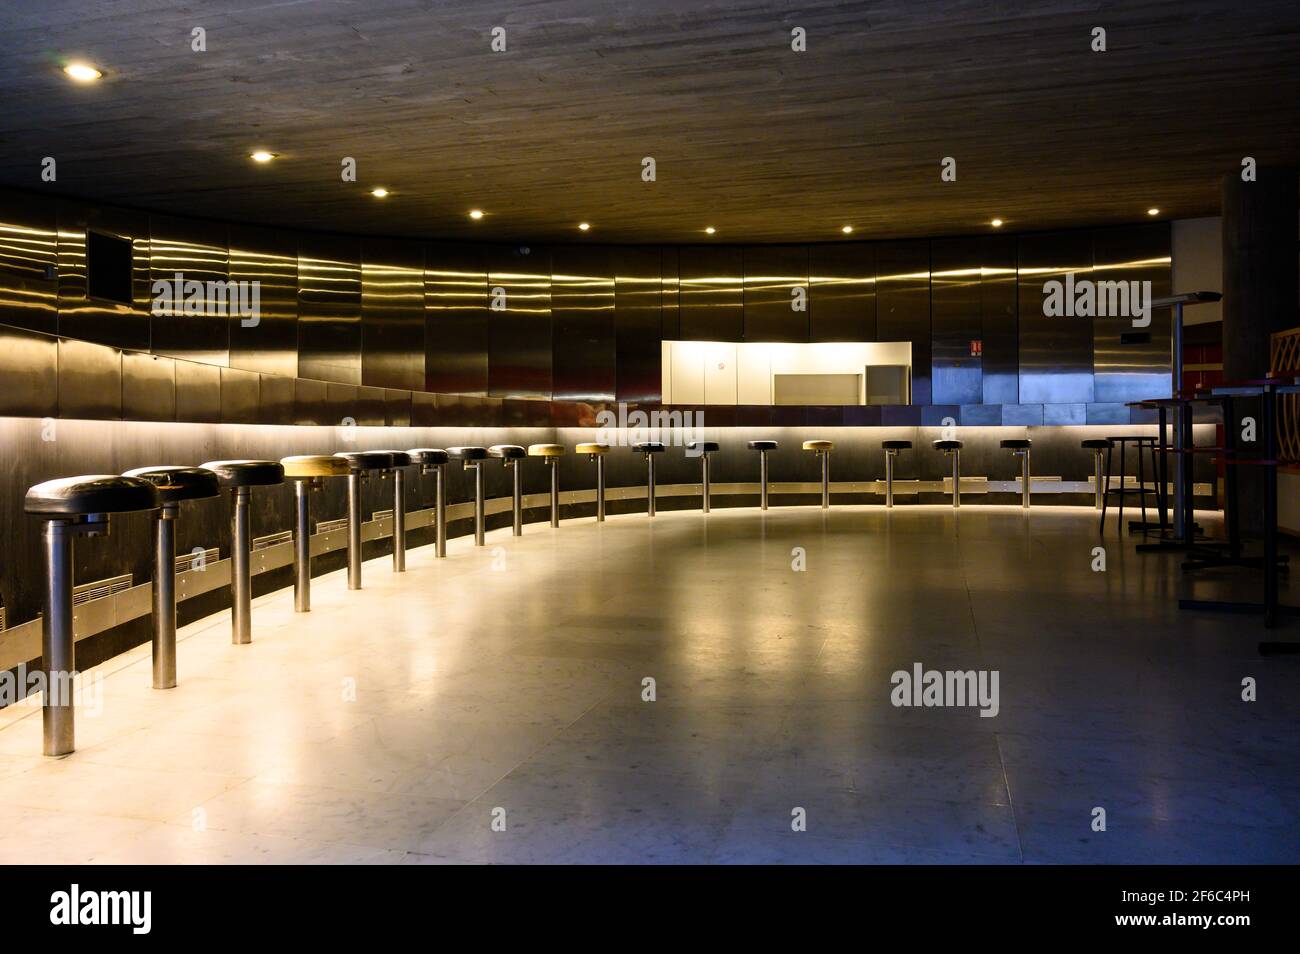 Vue panoramique sur le design rétro à l'intérieur. Rangée de chaises rondes noires autour du mur. Intérieur du bâtiment hauts-de-Seine de la préfecture de police. Banque D'Images